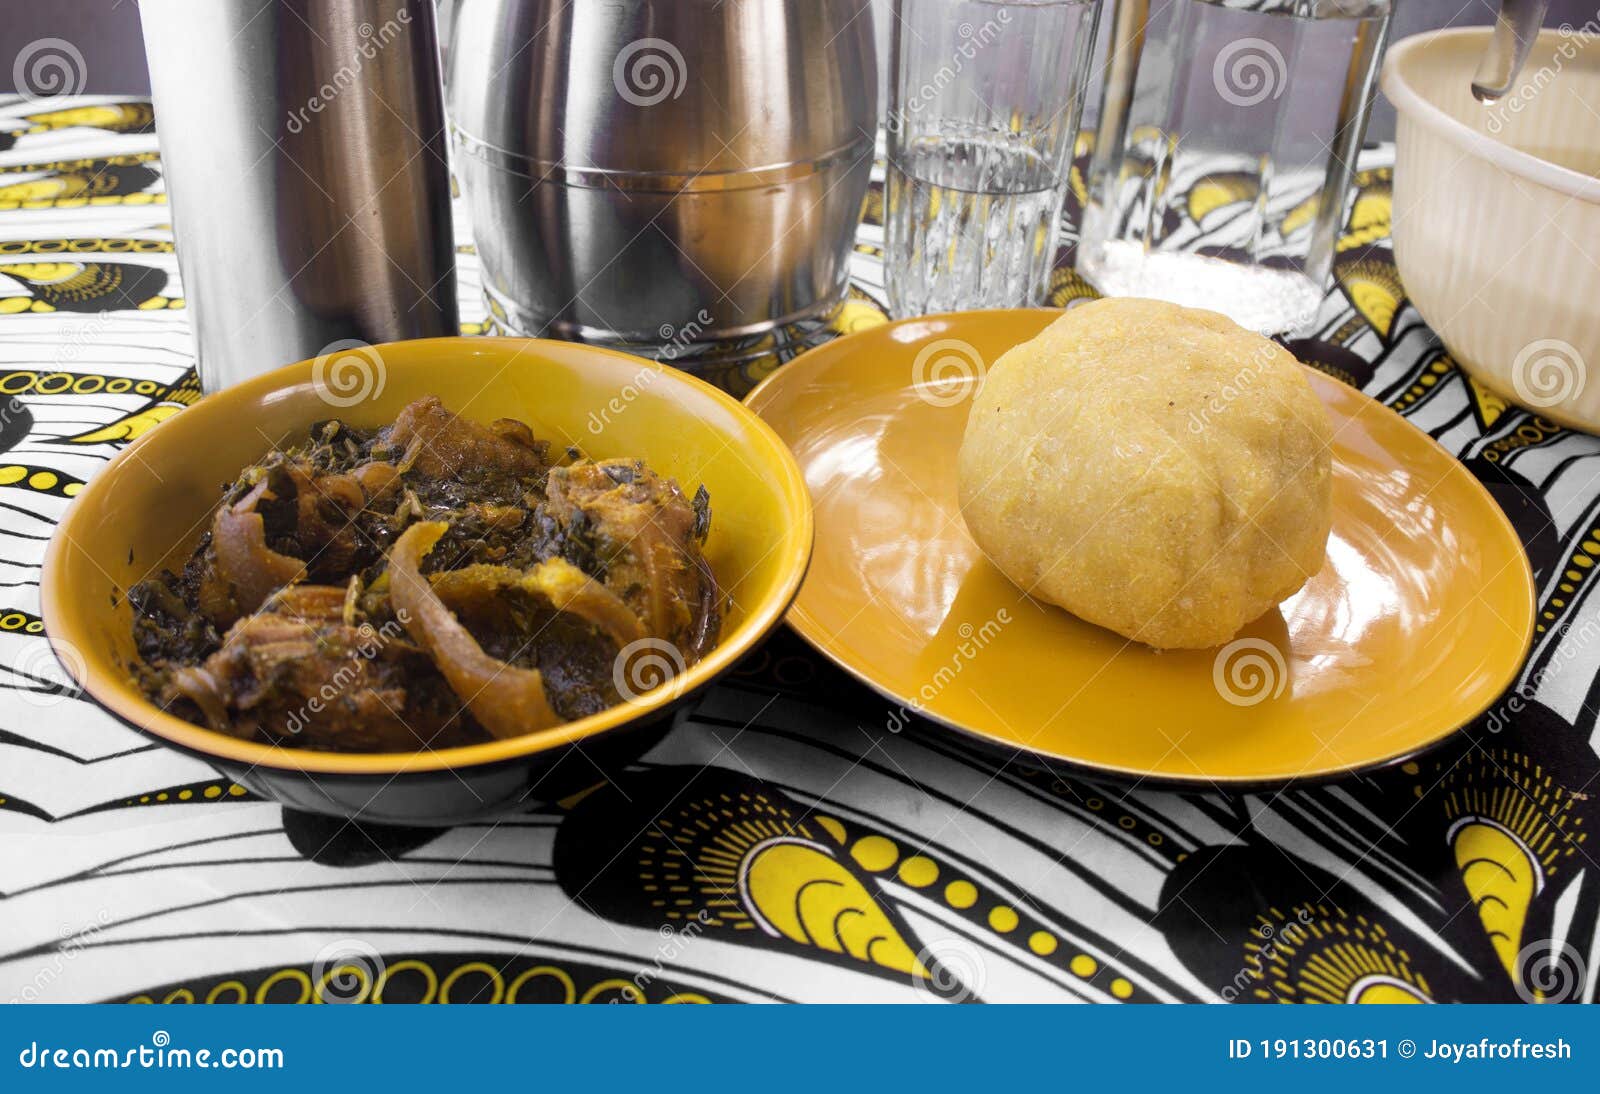 一堆美味的尼日利亚阿卡拉炸酱 库存照片. 图片 包括有 鲜美, 正餐, 膳食, 尼日利亚, 厨房, 叉子 - 157789872